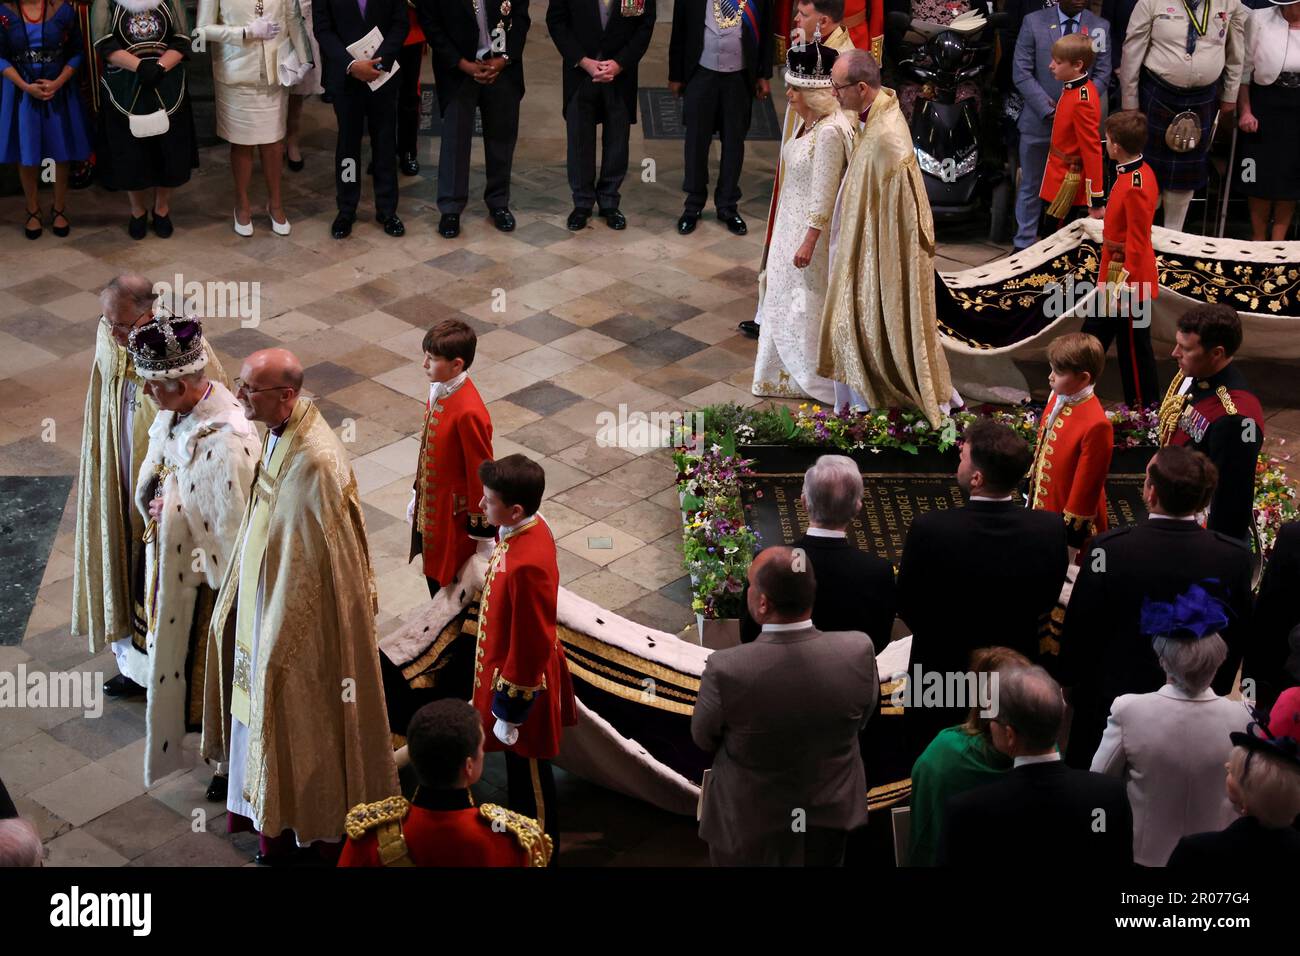 König Karl III. Und Königin Camilla brechen nach ihrer Krönung in Westminster Abbey, London, auf. Foto: Samstag, 6. Mai 2023. Stockfoto